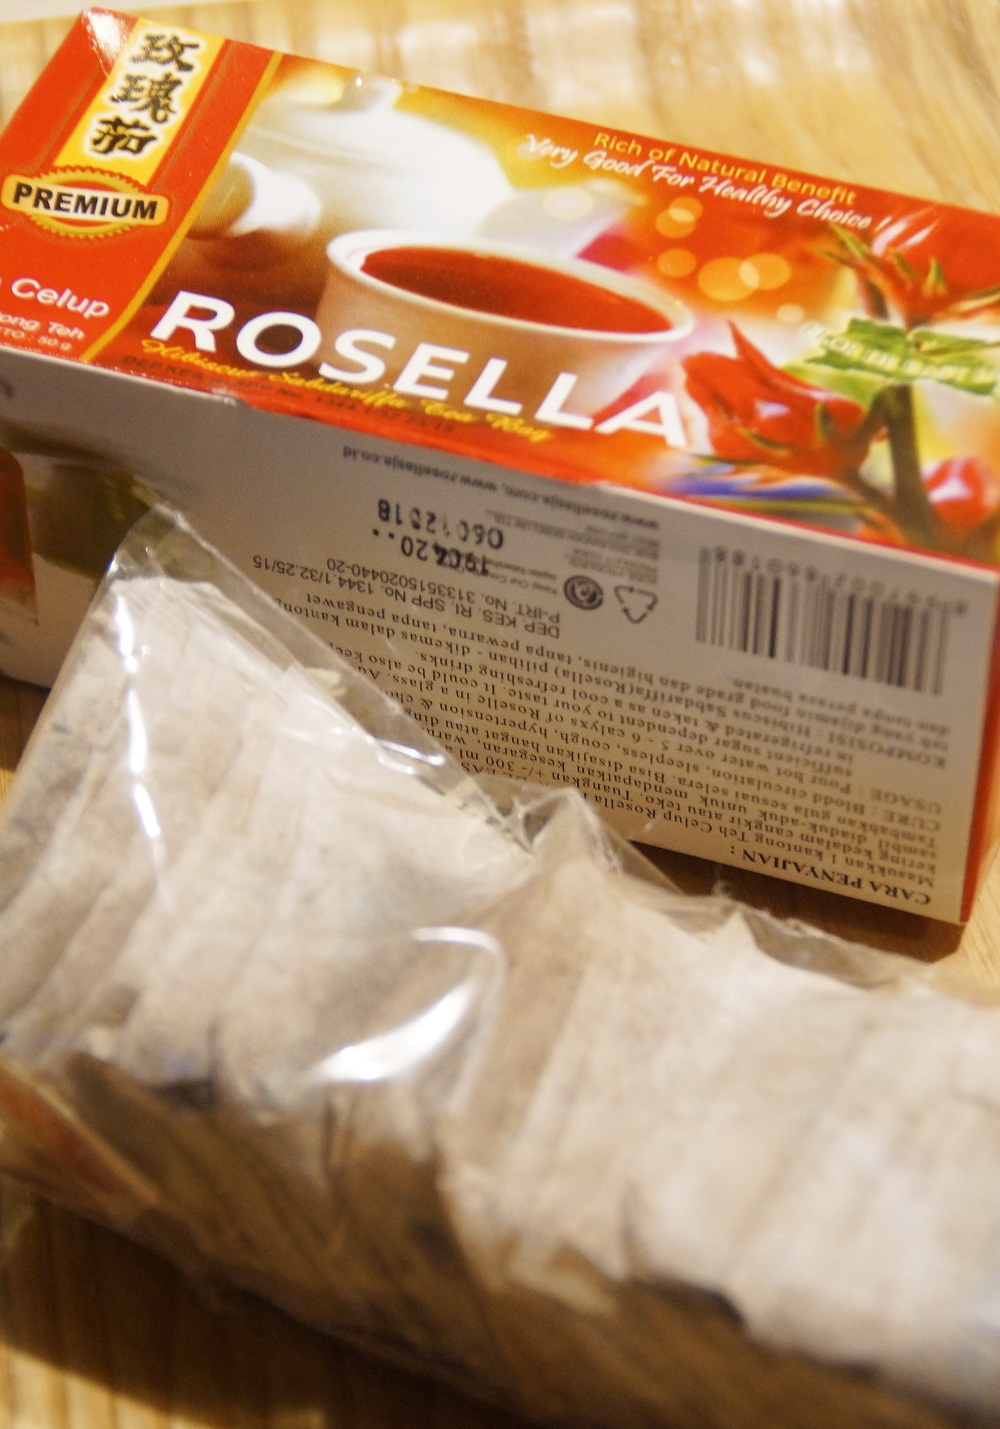 rosella tea